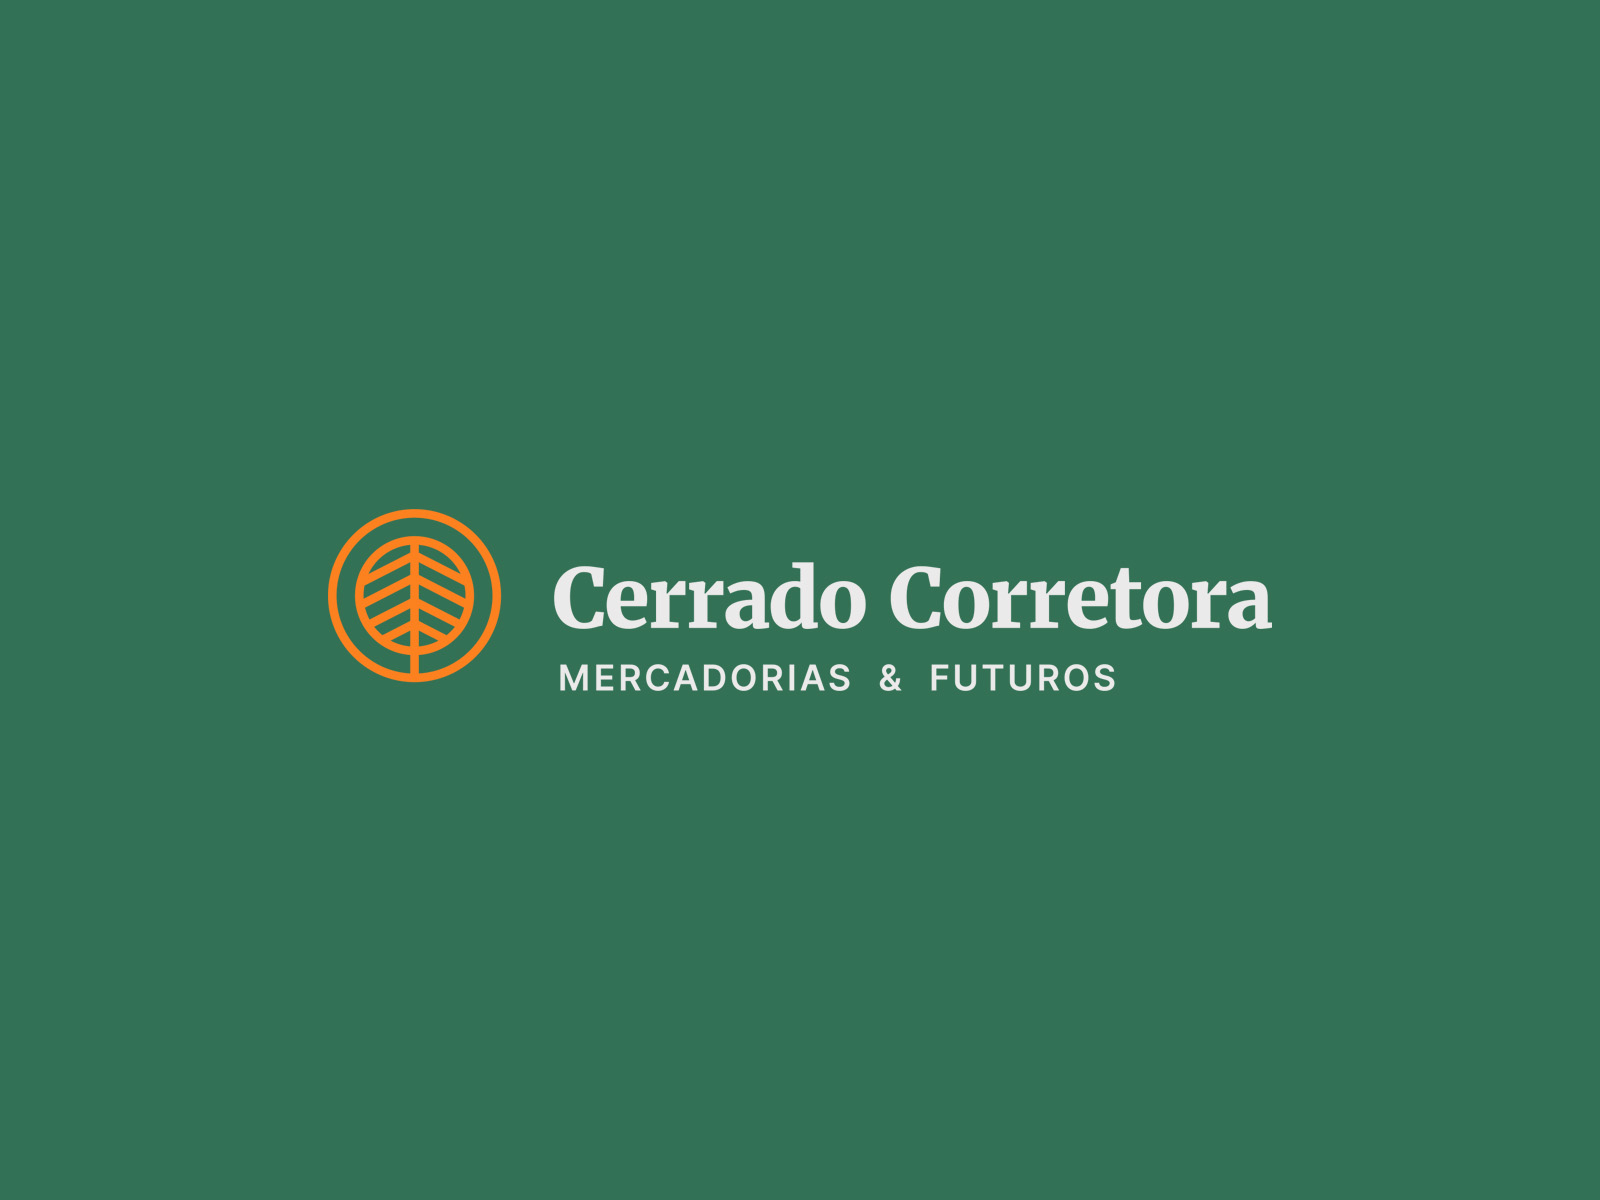 Cerrado Corretora - Logo by João Matheus on Dribbble